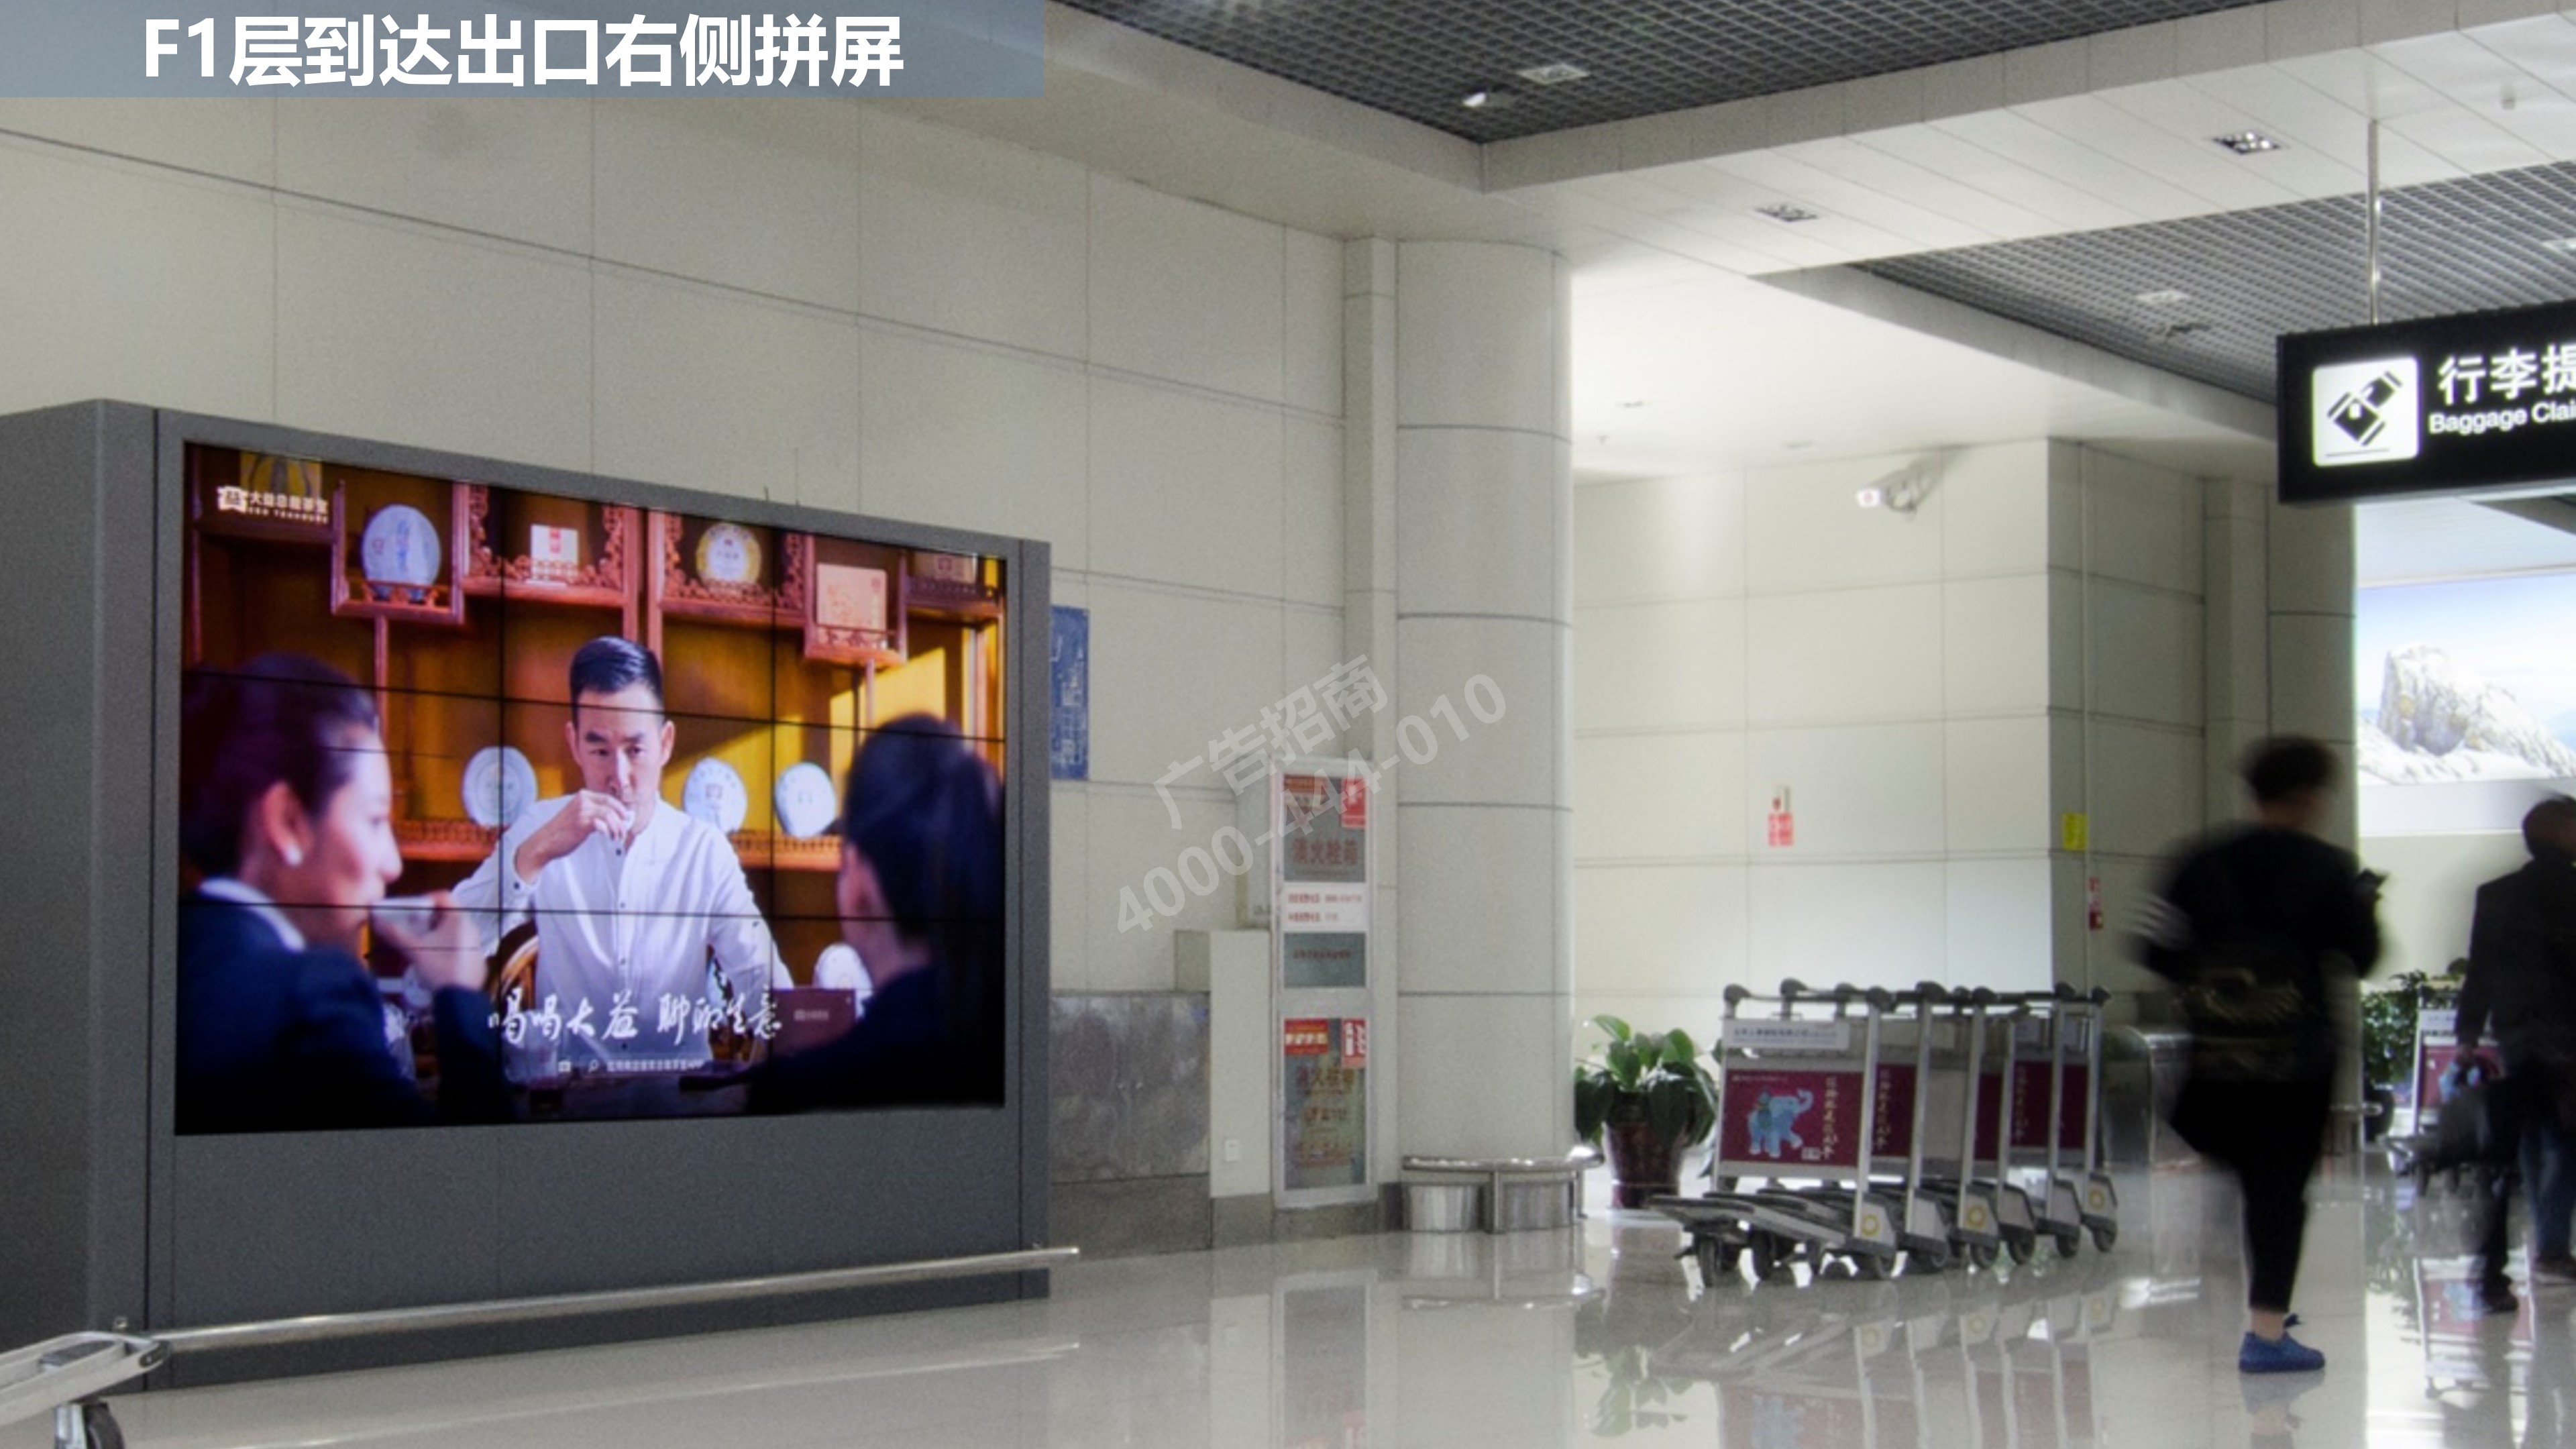 丽江机场到达出口广告